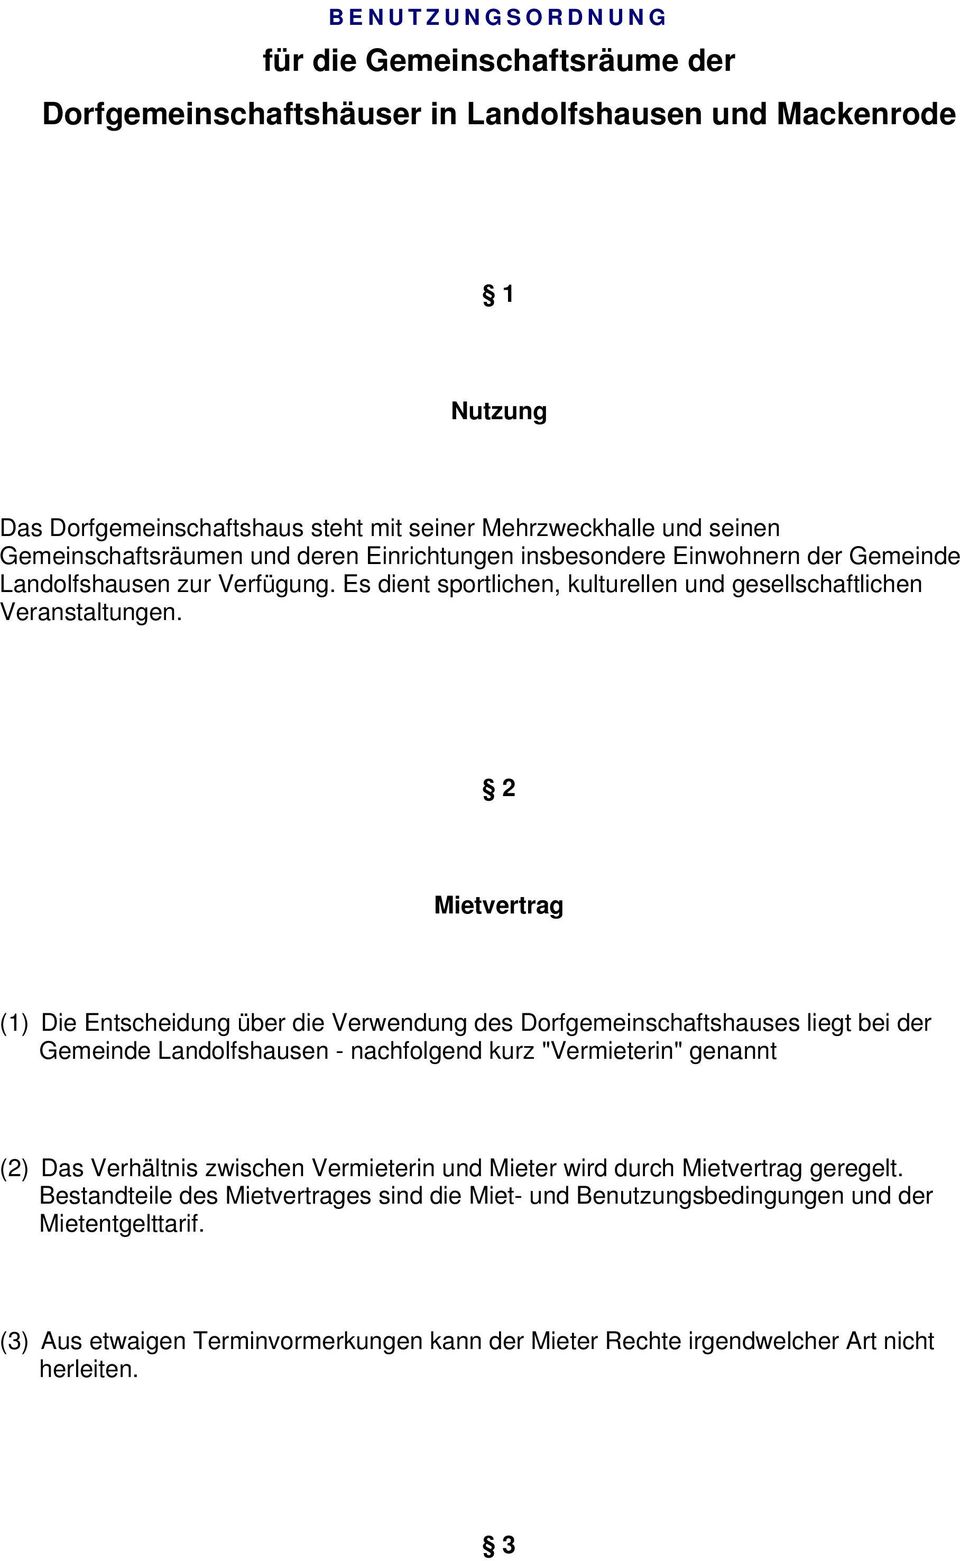 2 Mietvertrag (1) Die Entscheidung über die Verwendung des Dorfgemeinschaftshauses liegt bei der Gemeinde Landolfshausen - nachfolgend kurz "Vermieterin" genannt (2) Das Verhältnis zwischen